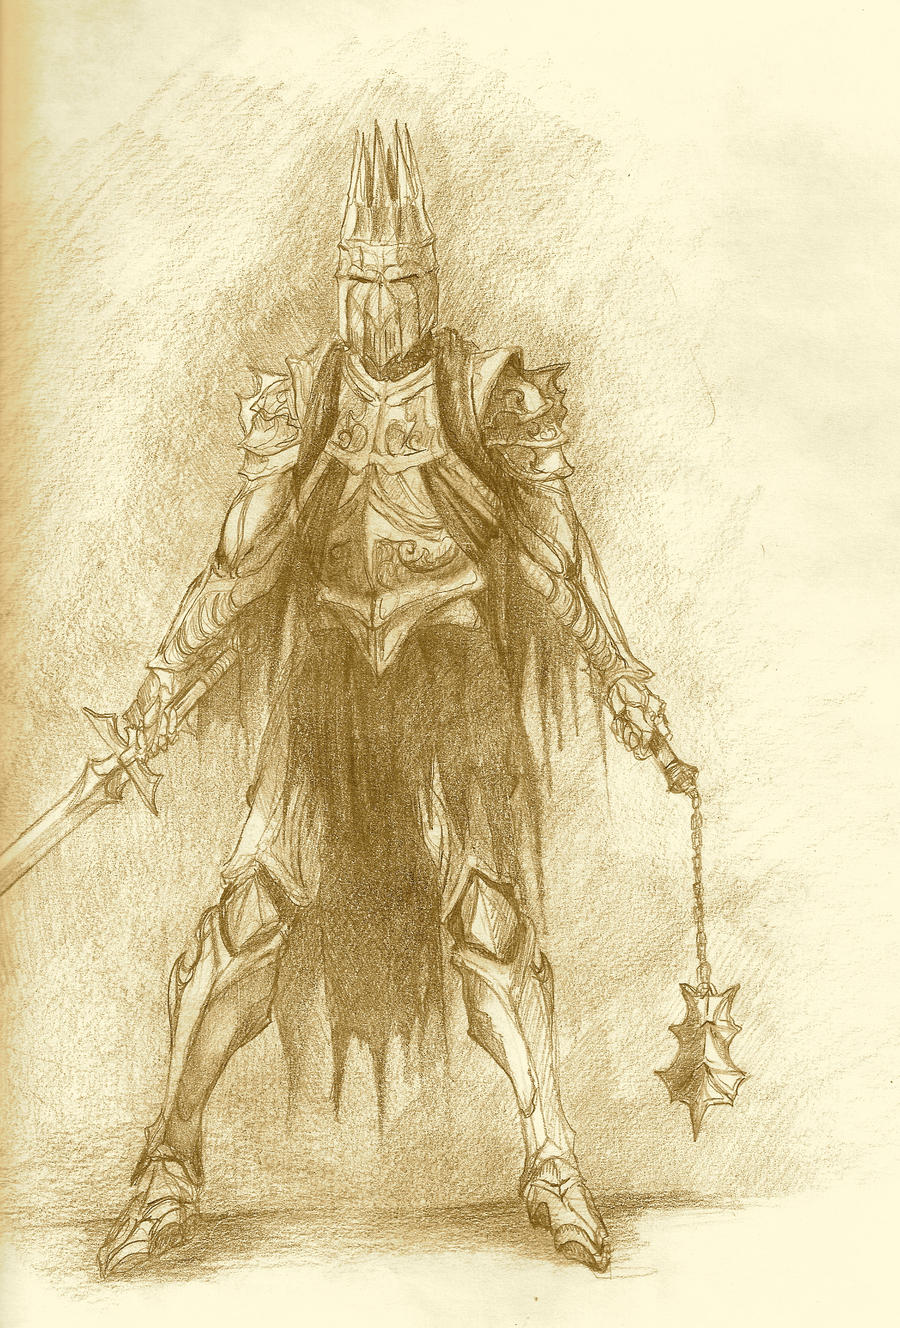 Wraithlord of Angmar